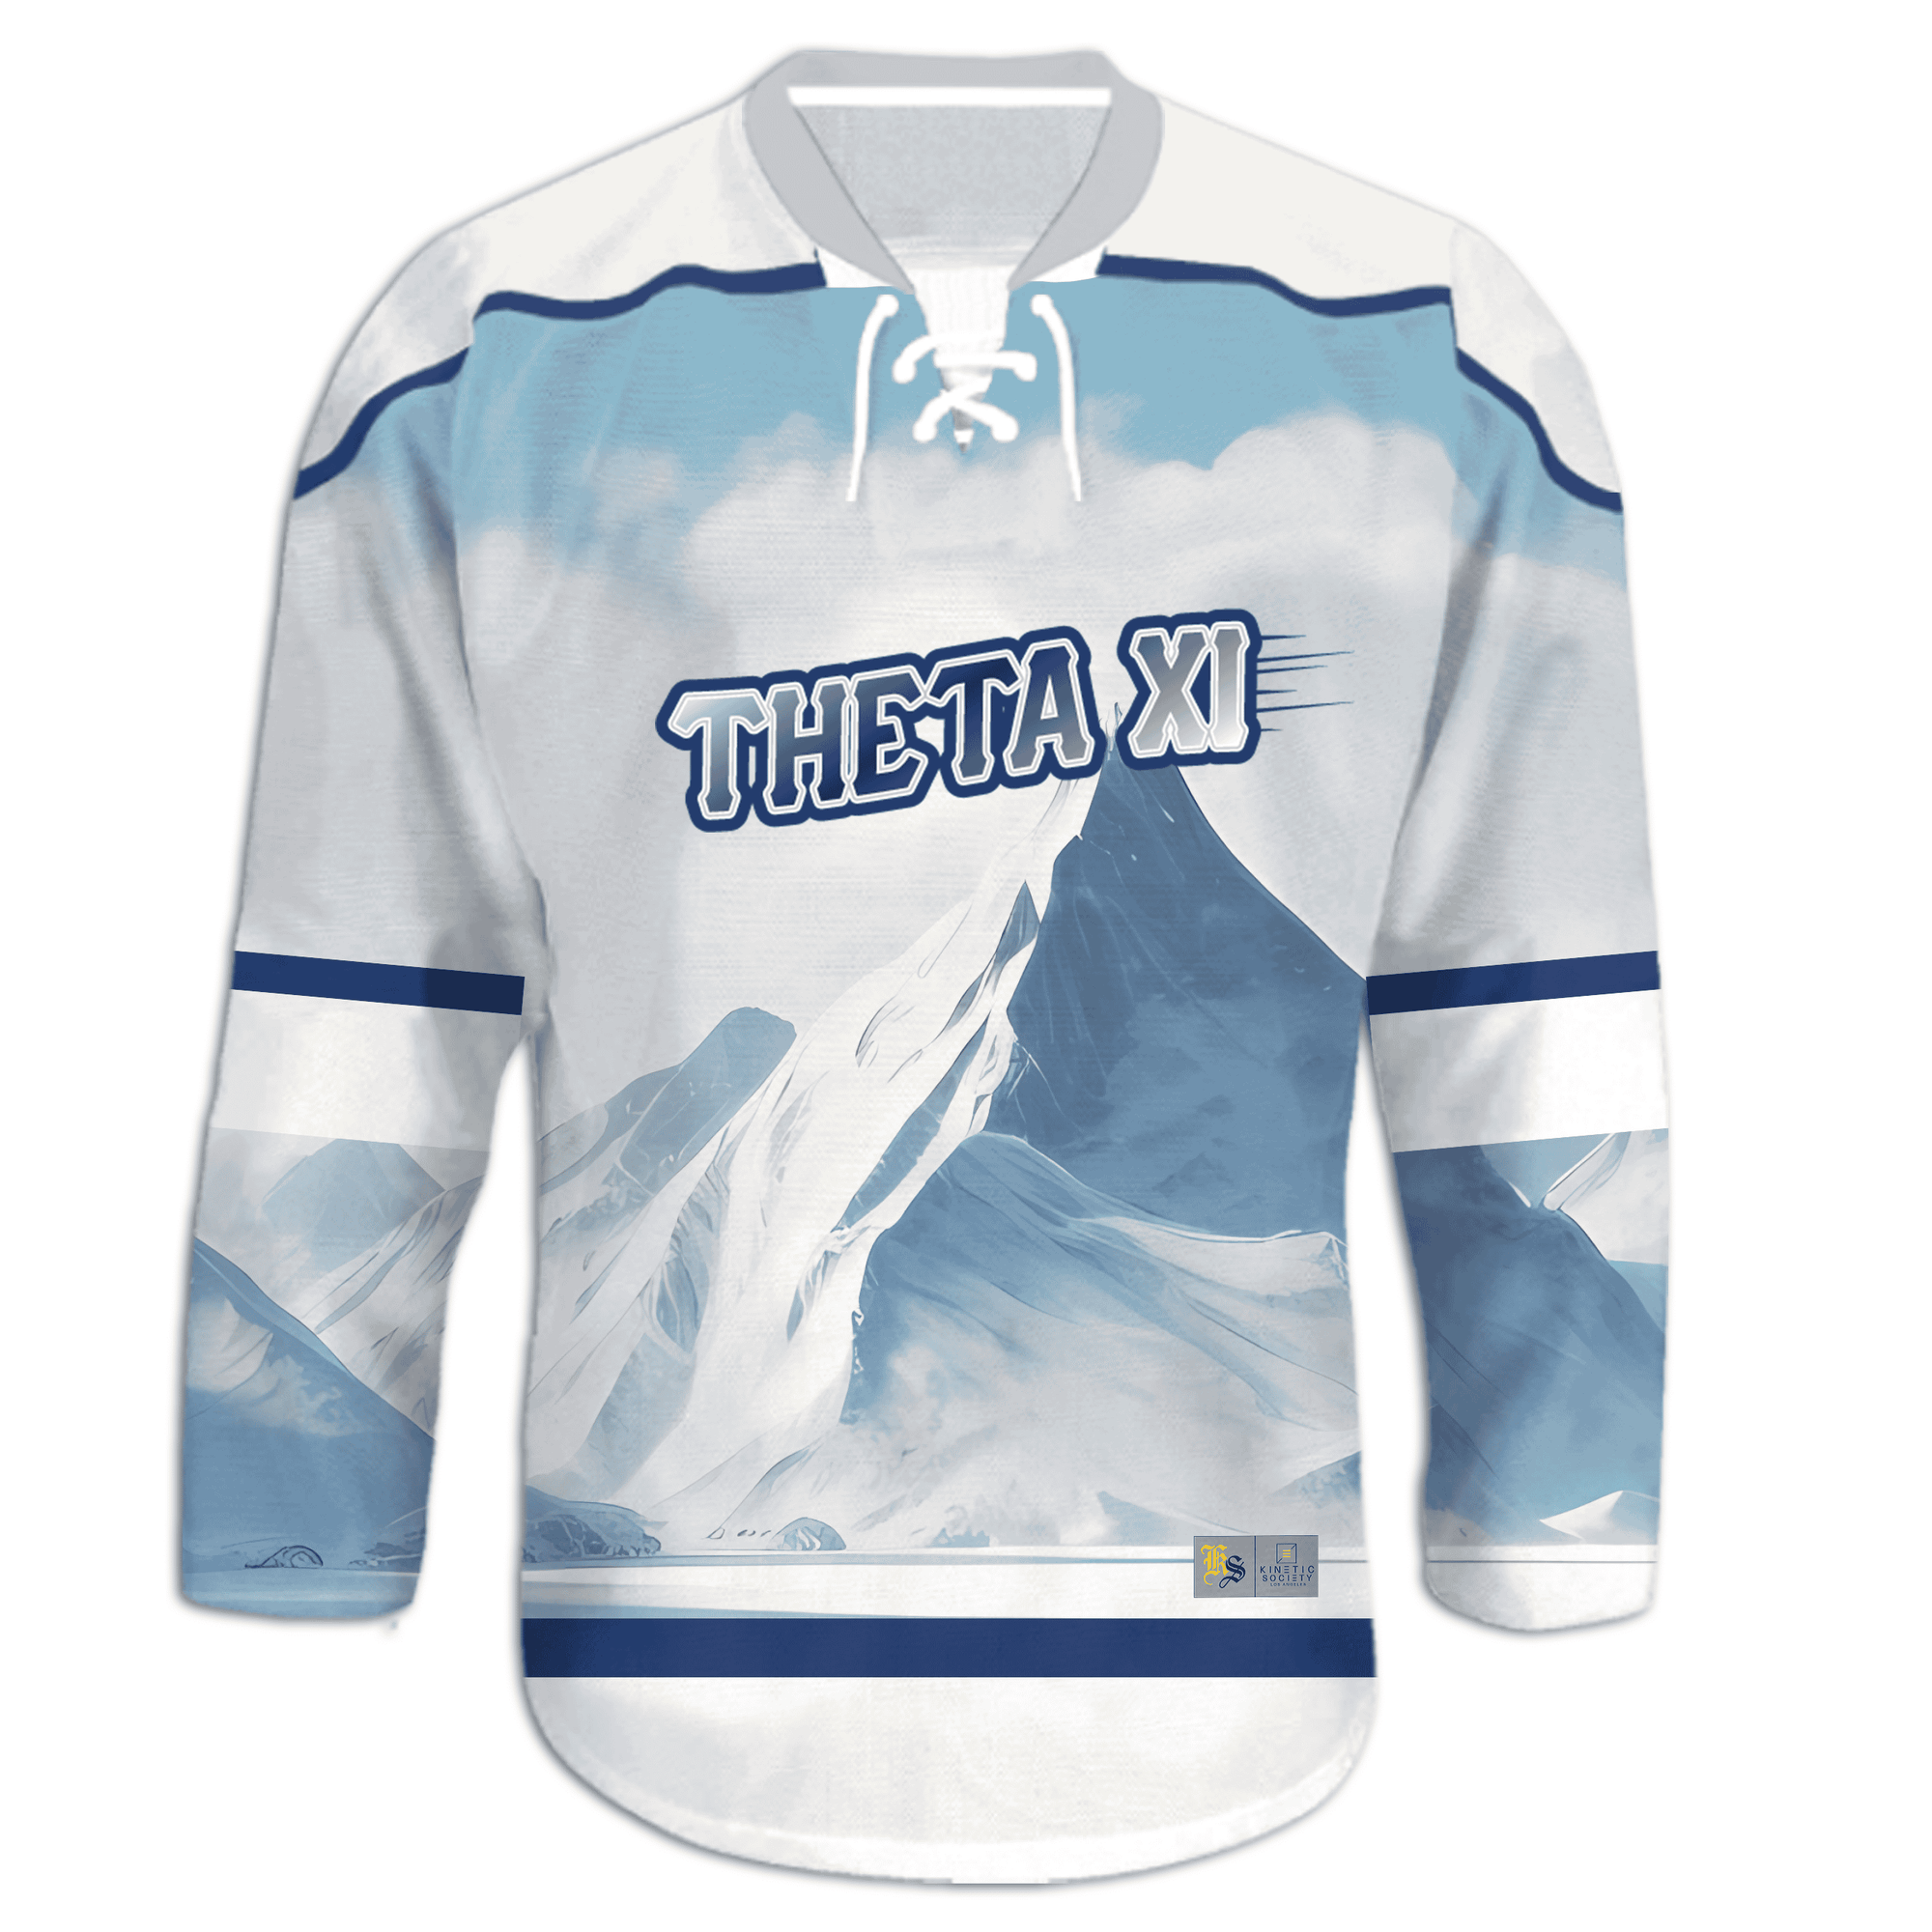 Theta Xi - Avalanche Hockey Jersey